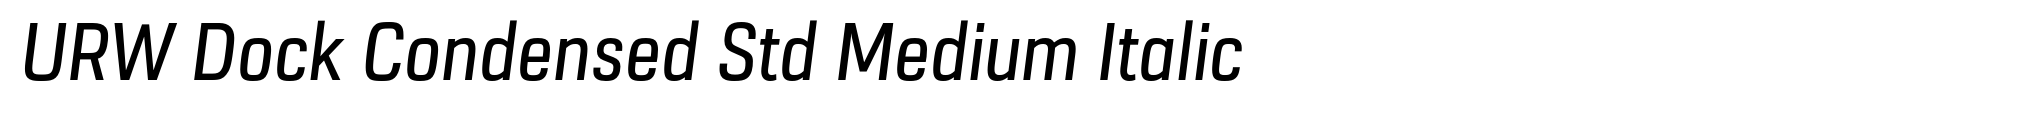 URW Dock Condensed Std Medium Italic image